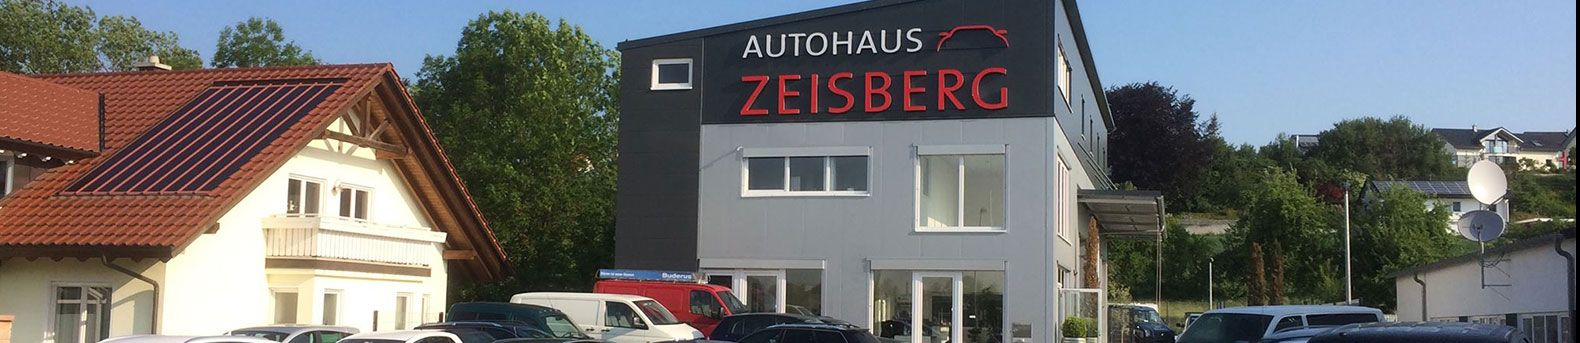 Autohaus Zeisberg header